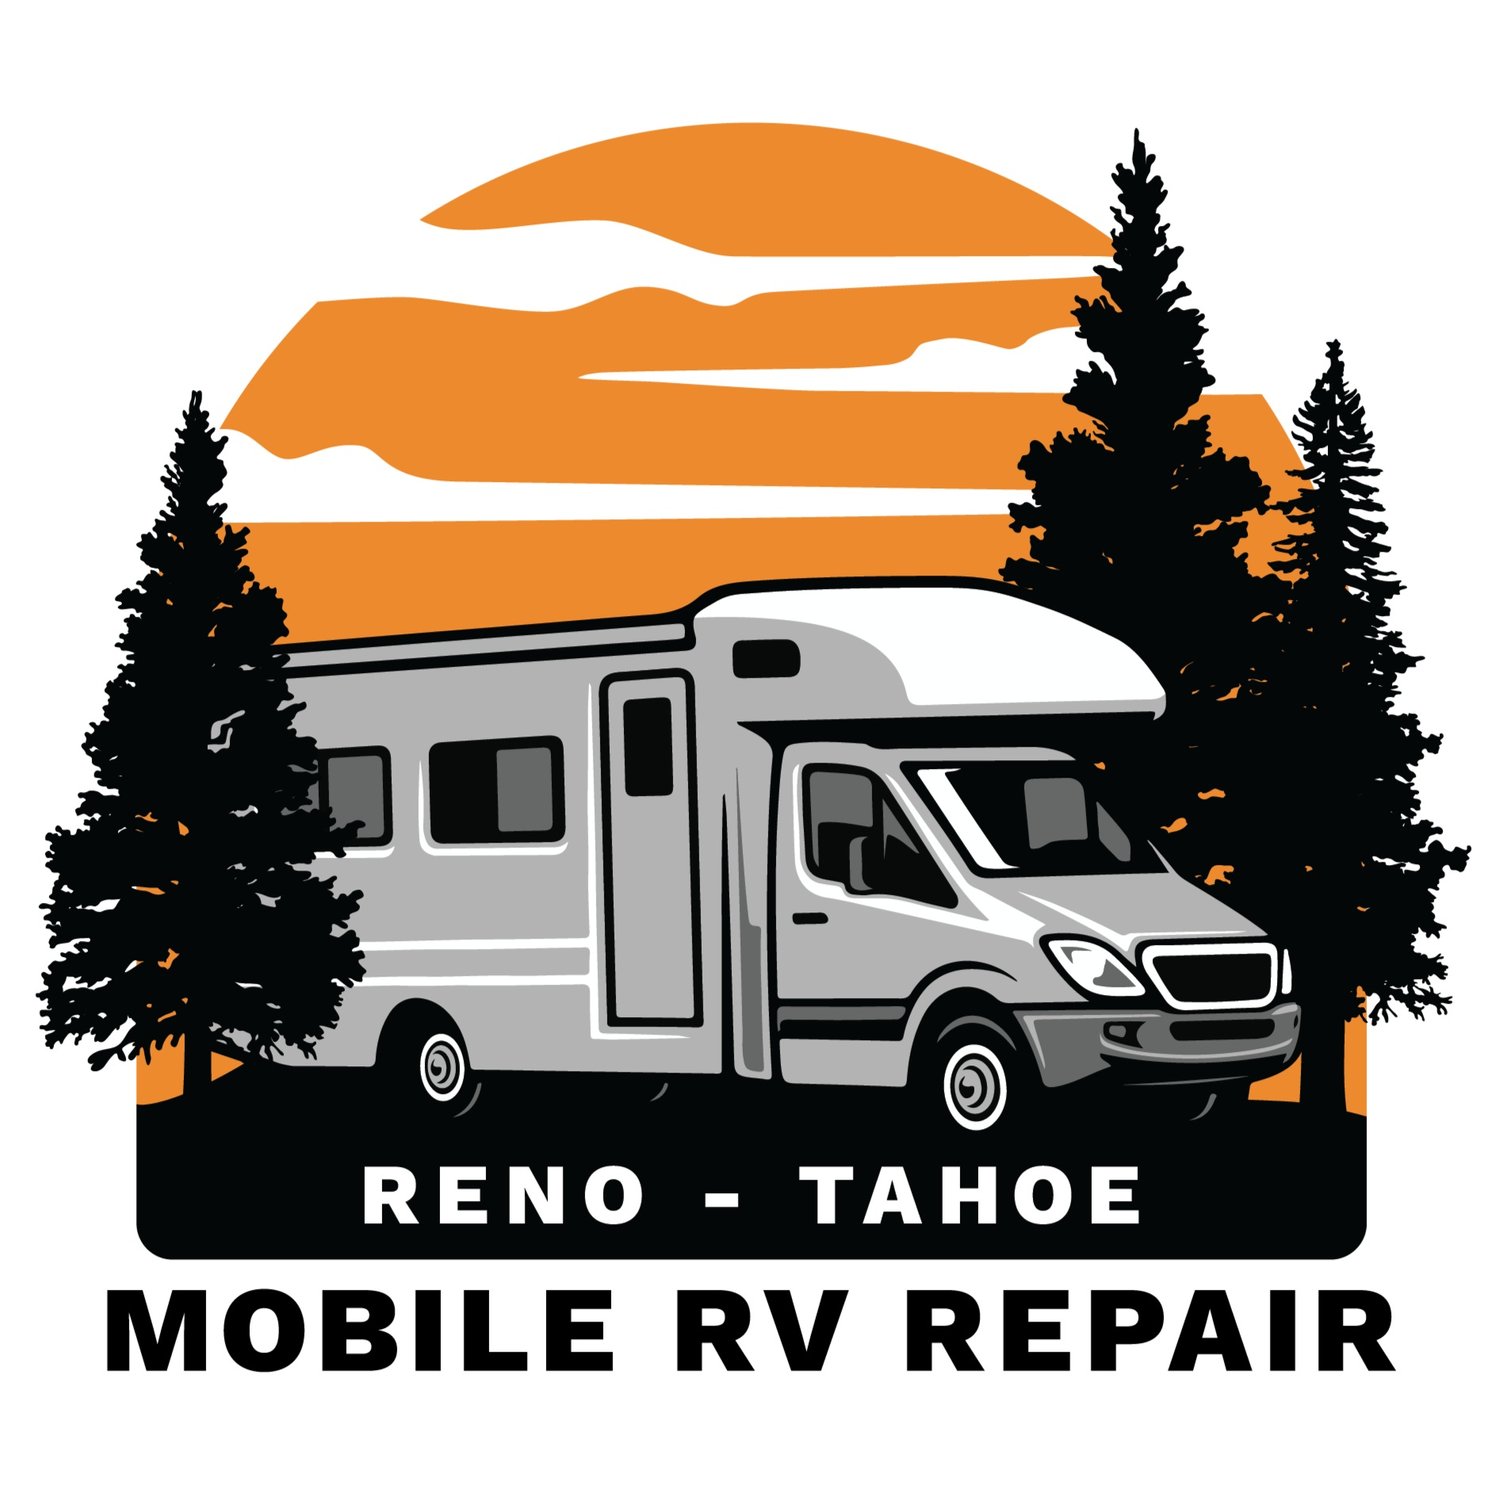 Reno - Tahoe Mobile RV Repair